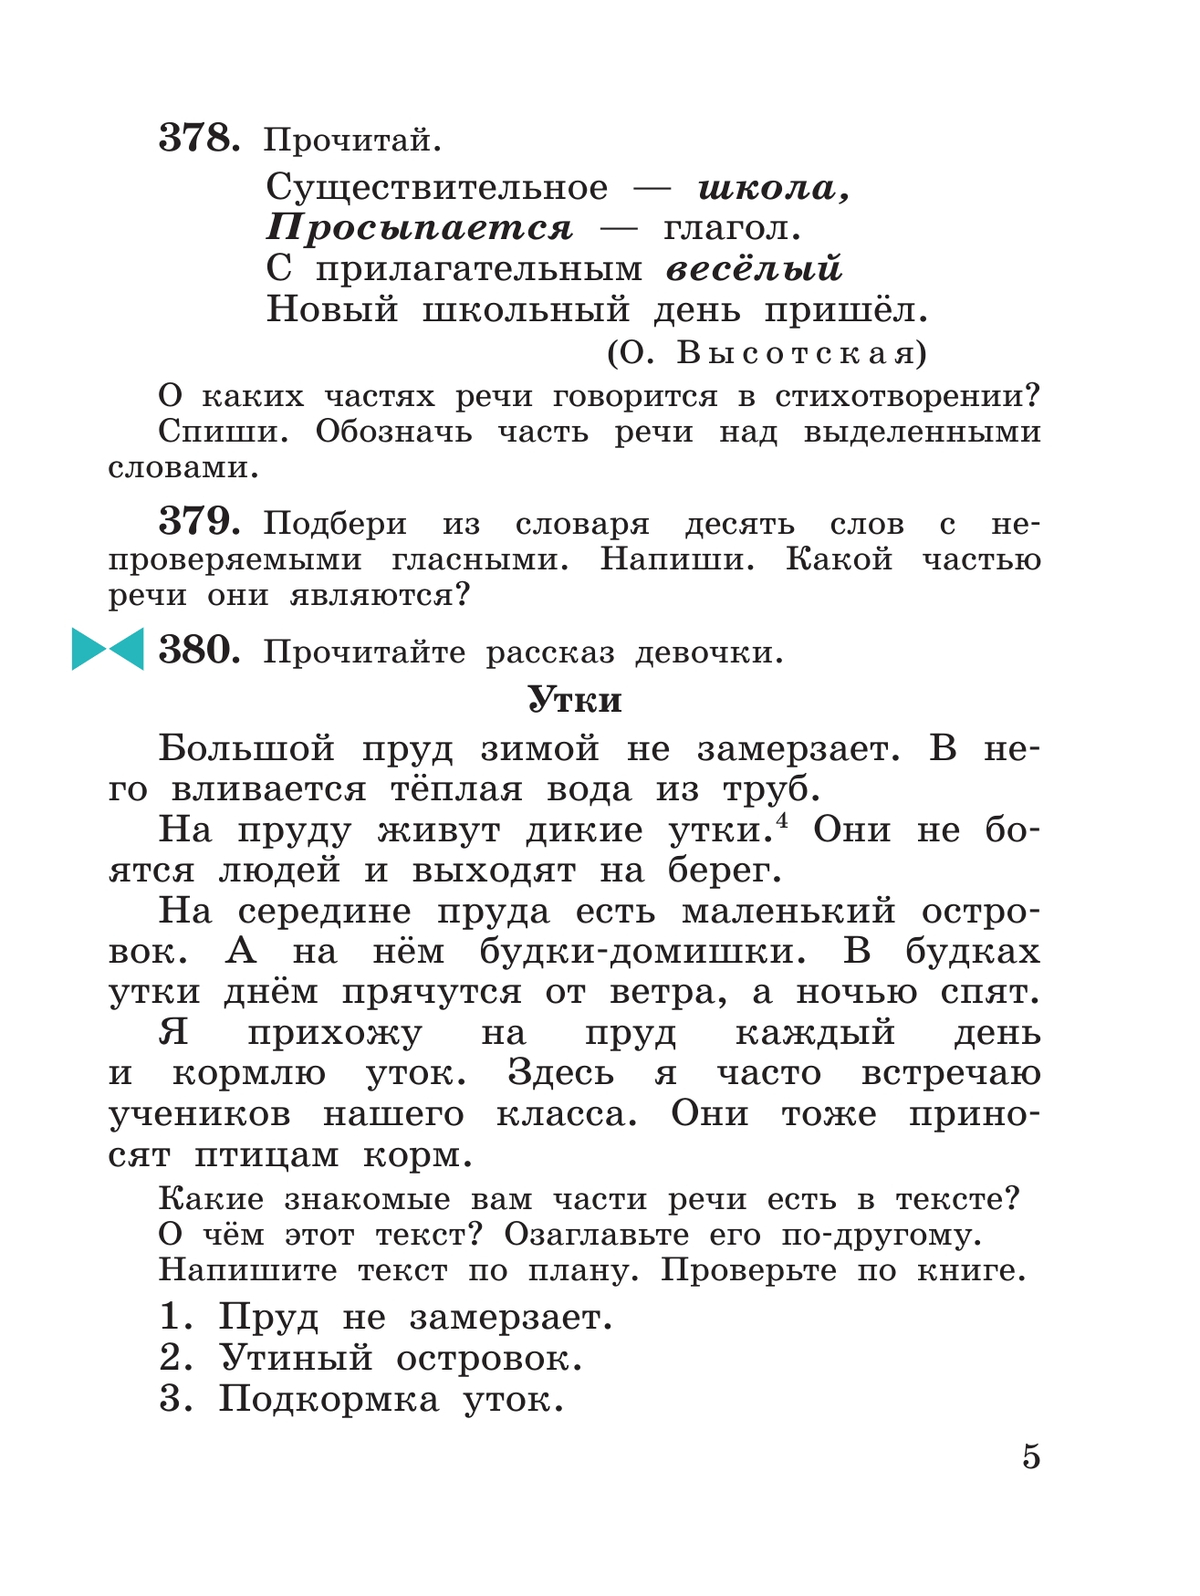 Русский язык. 3 класс. Учебник. В 2 ч. Часть 2 10